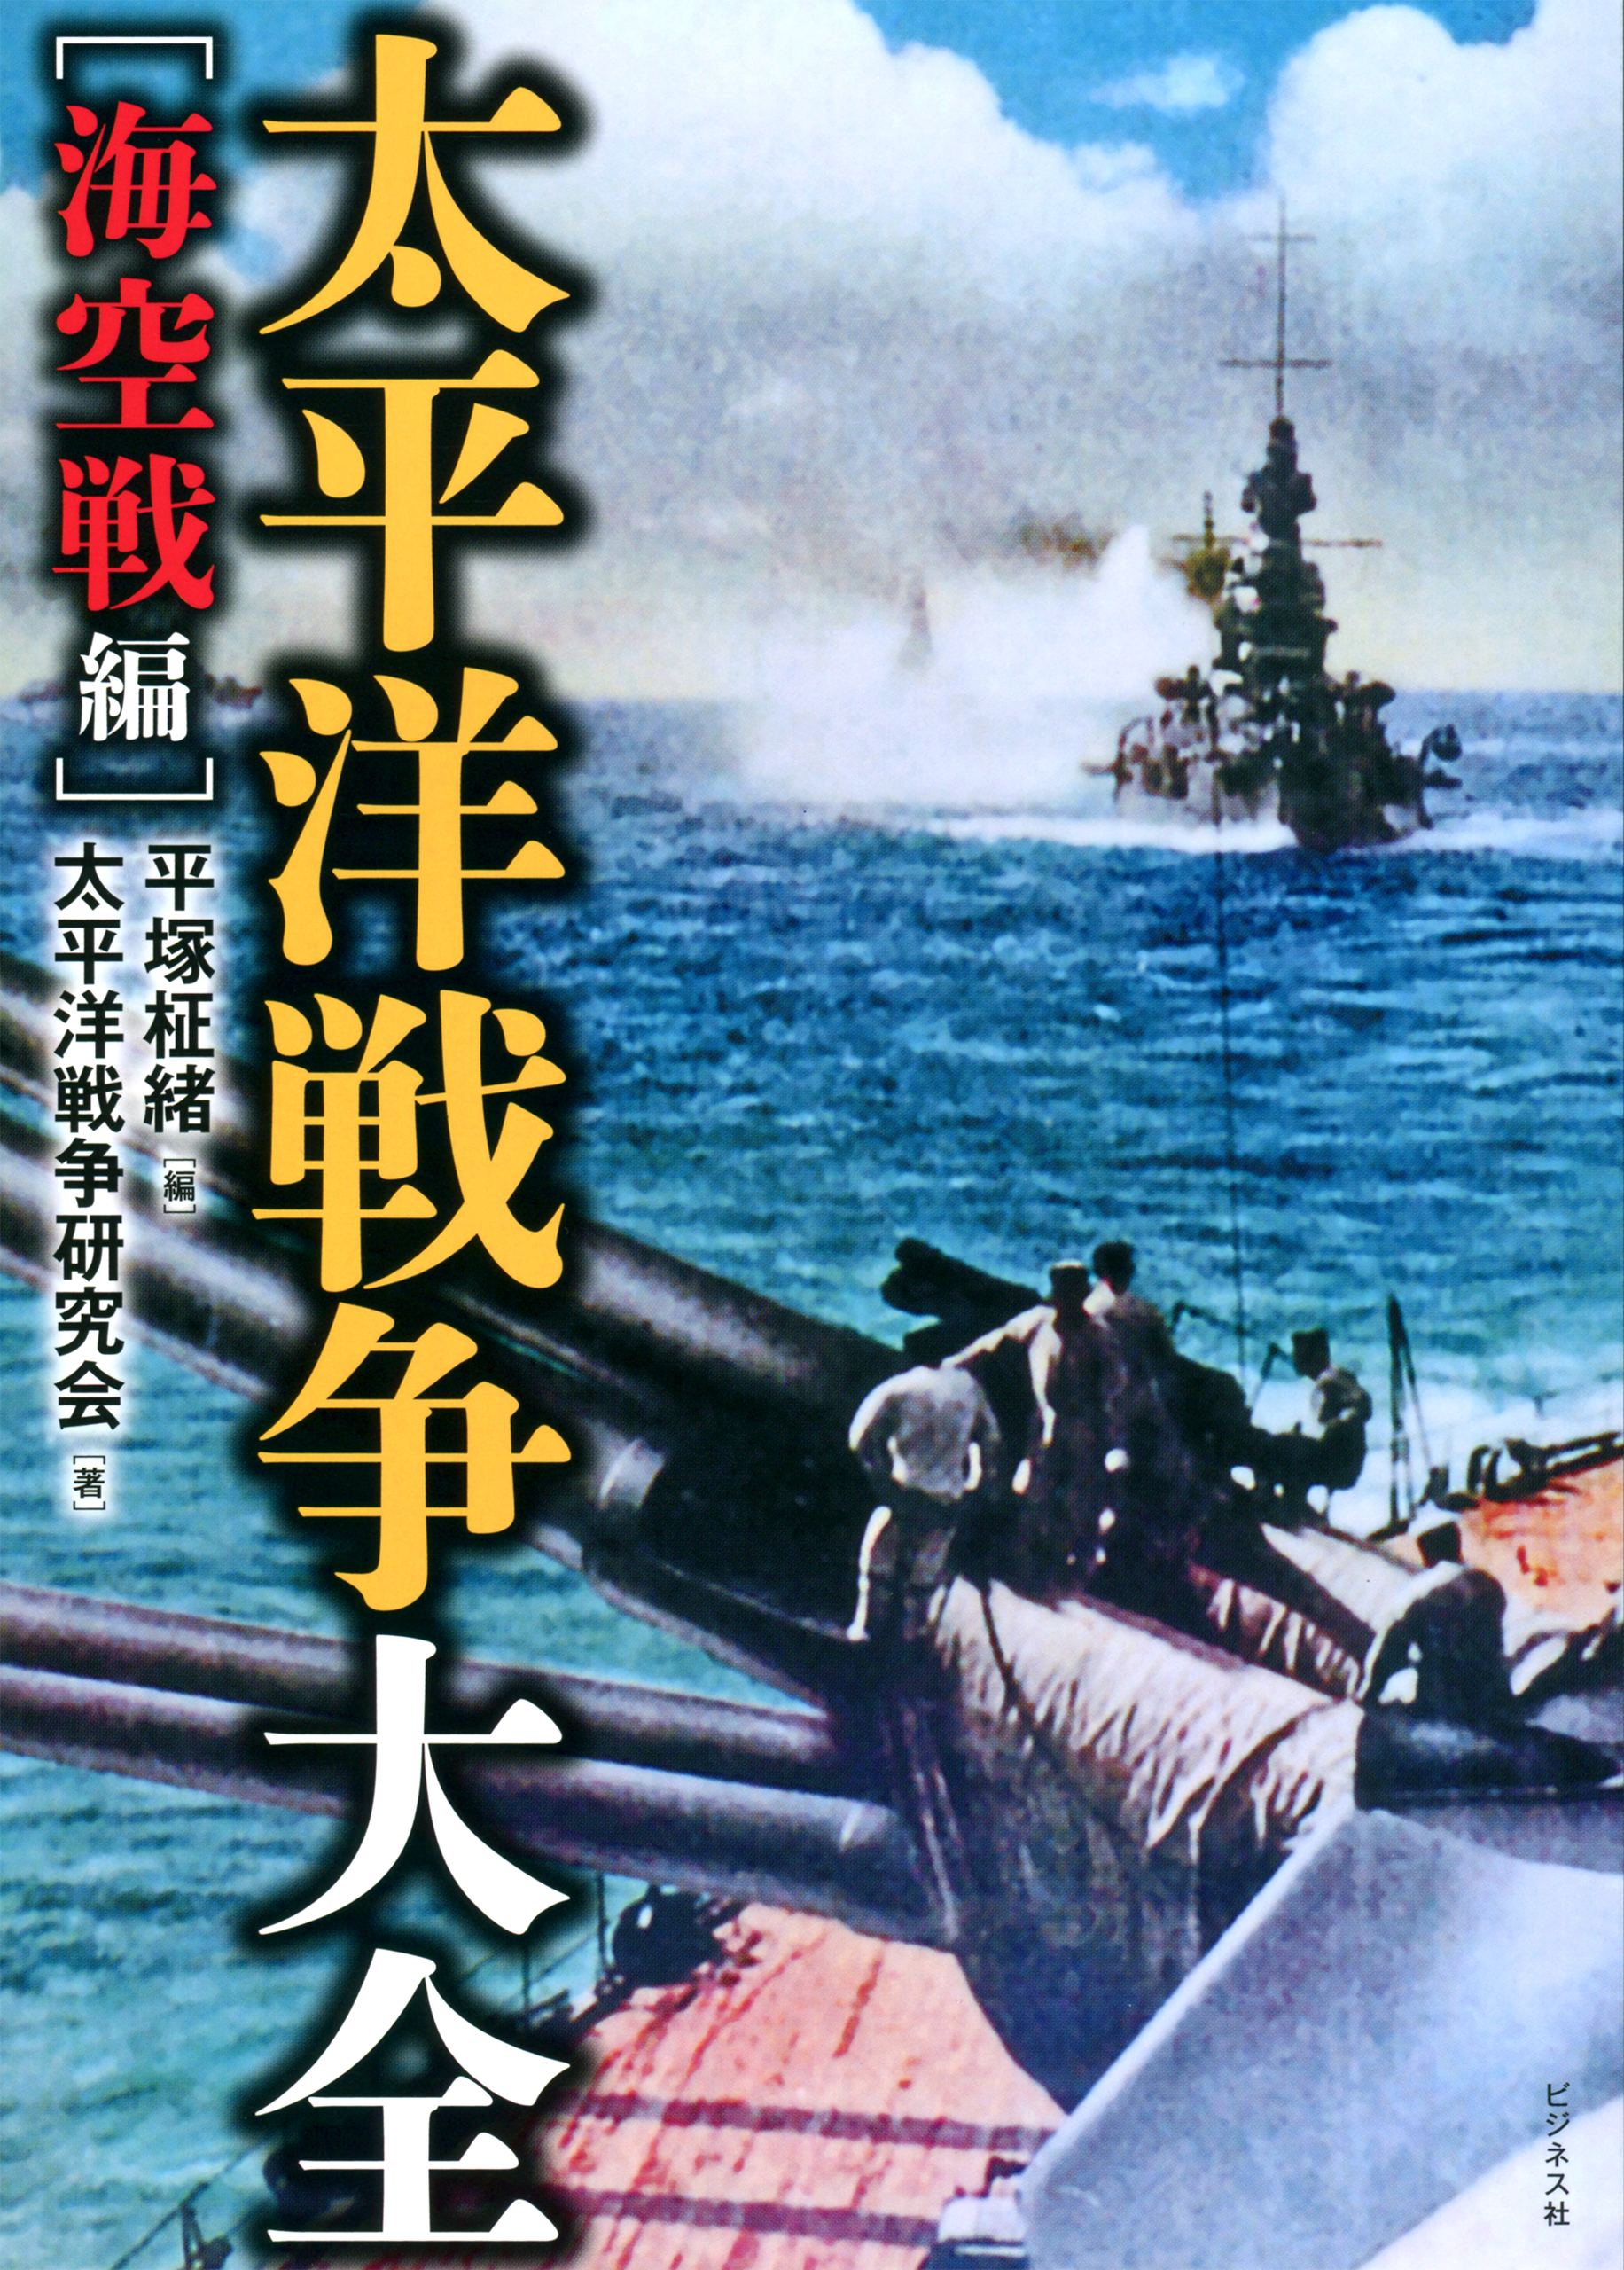 日本戦艦戦史 日本空母戦史 日本軽巡戦史 日本水雷戦史 残存帝国艦艇 